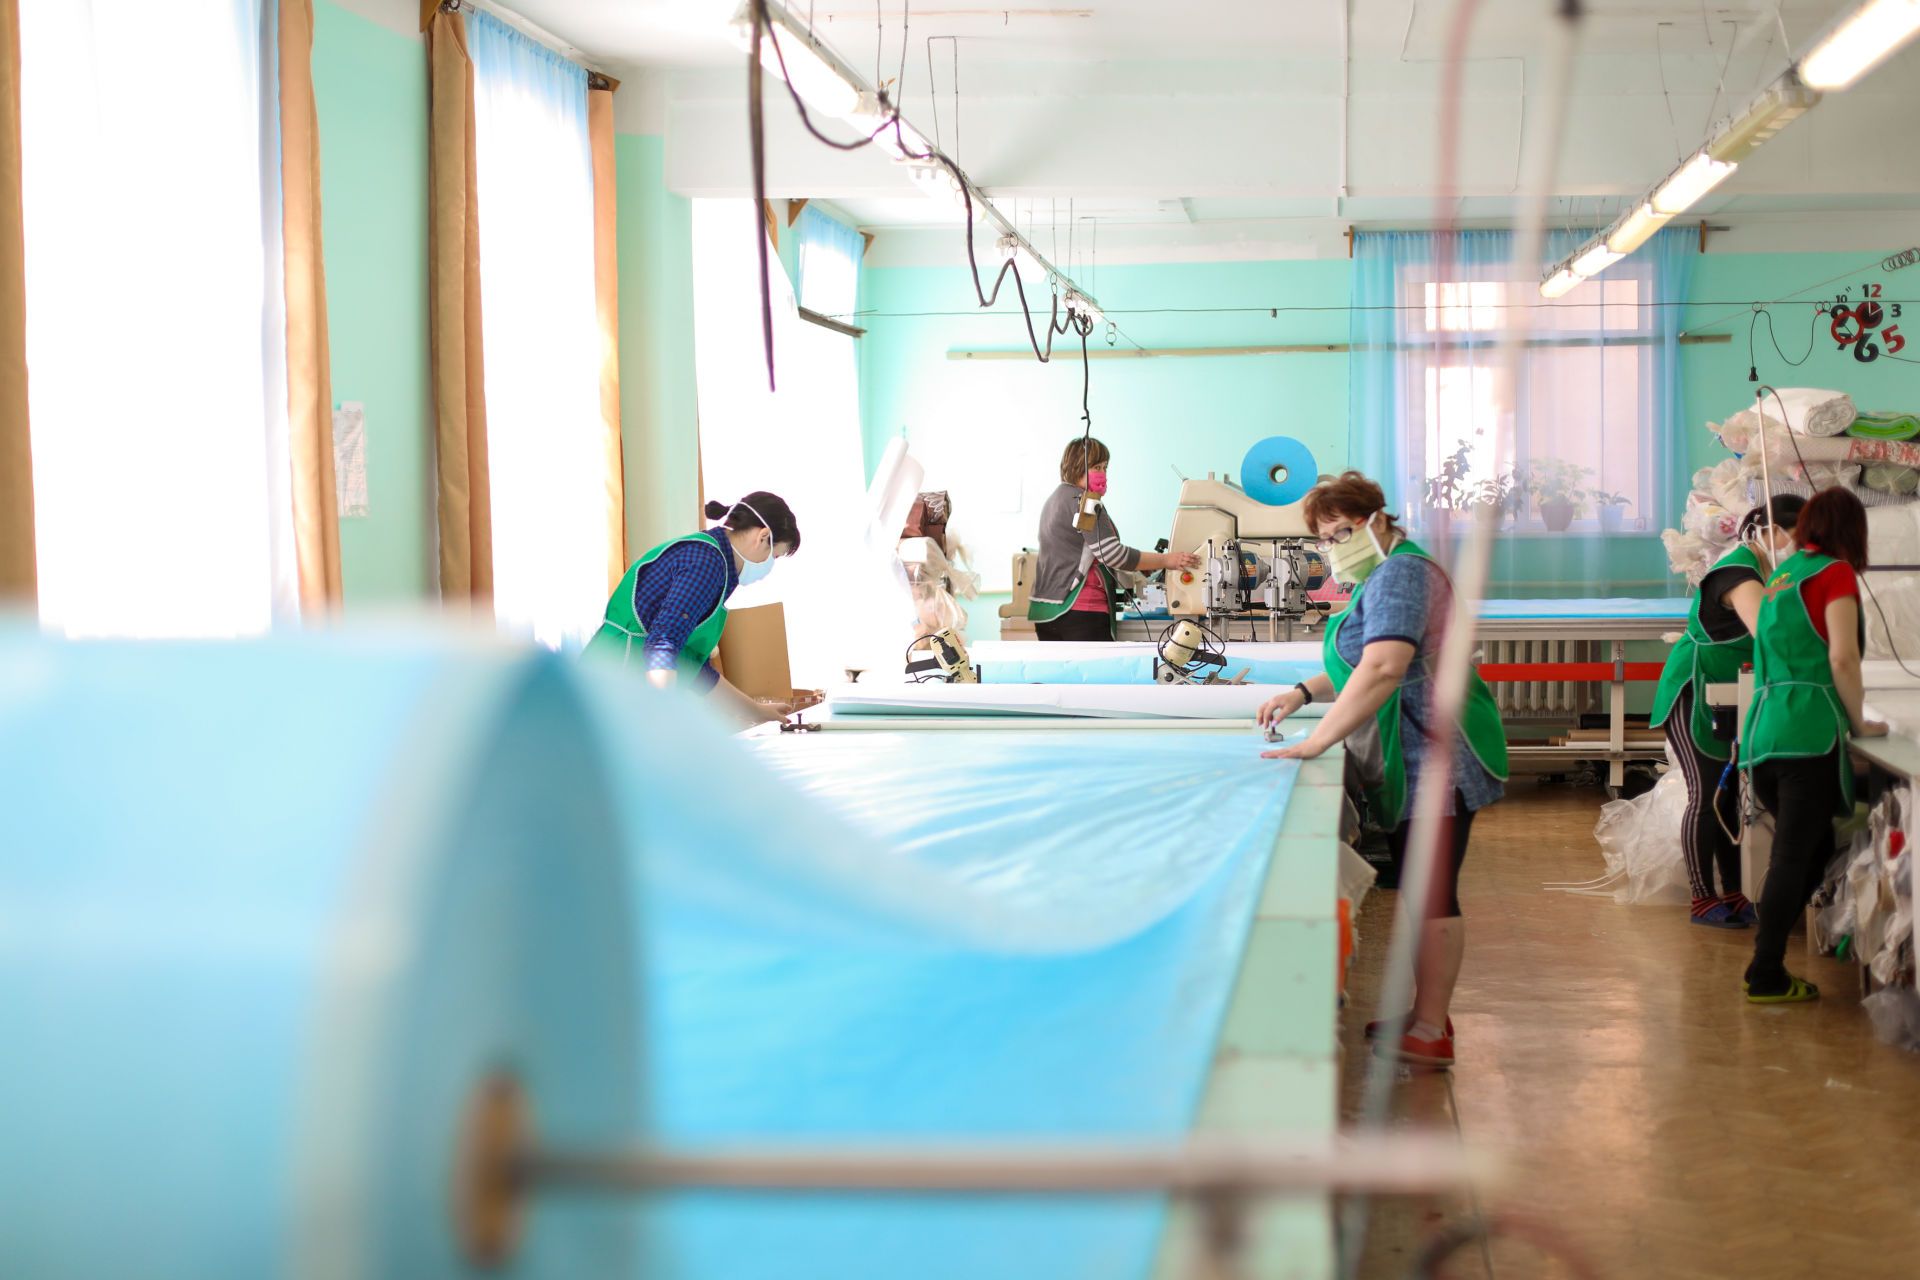 Работа для специалиста Бугульминской швейной фабрики Любови Никулиной давно стала смыслом жизни